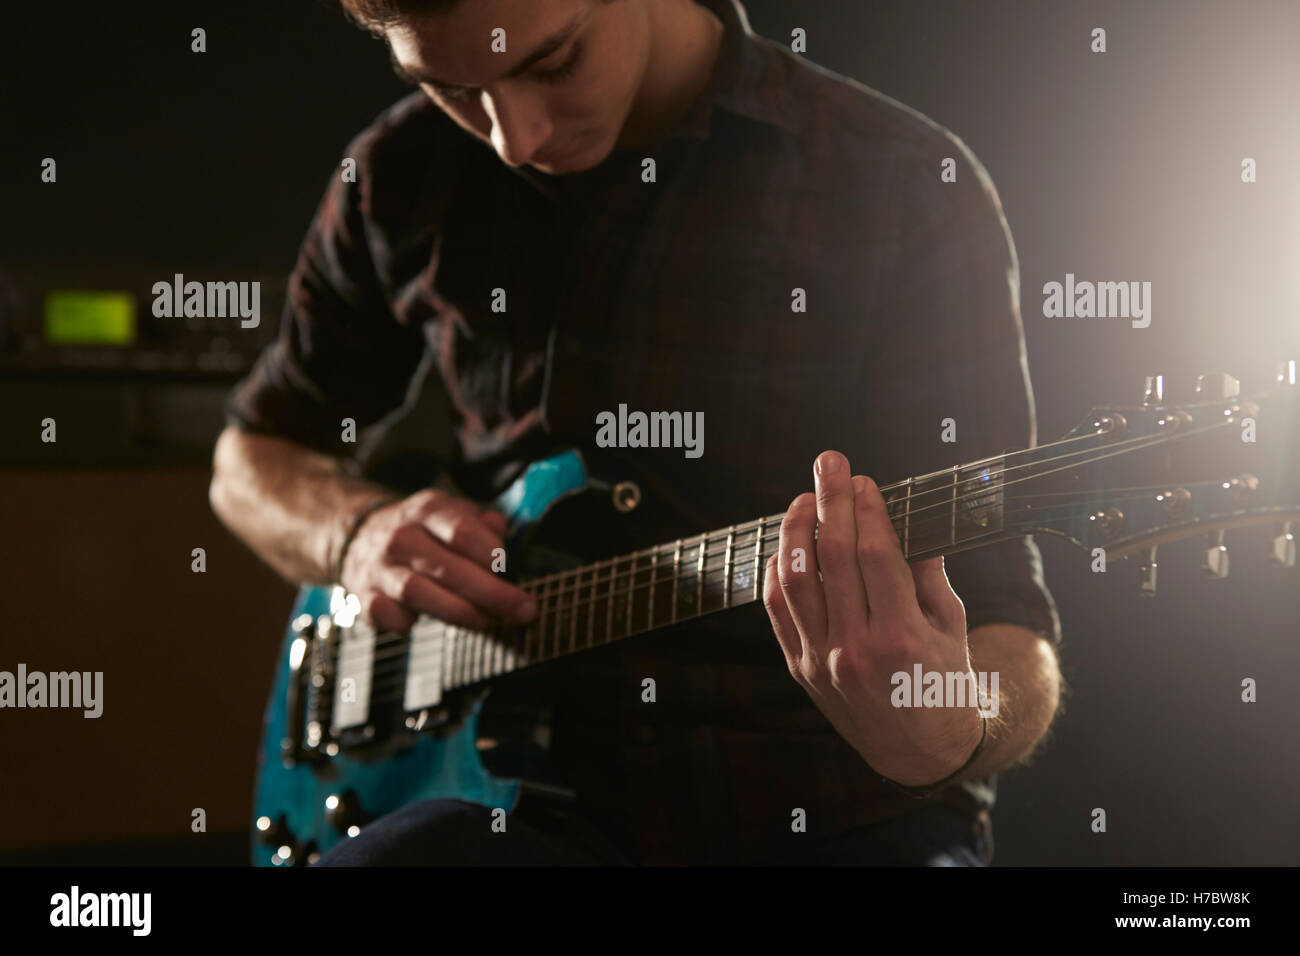 Cerca del hombre mediante la técnica de tocar en guitarra eléctrica Foto de stock